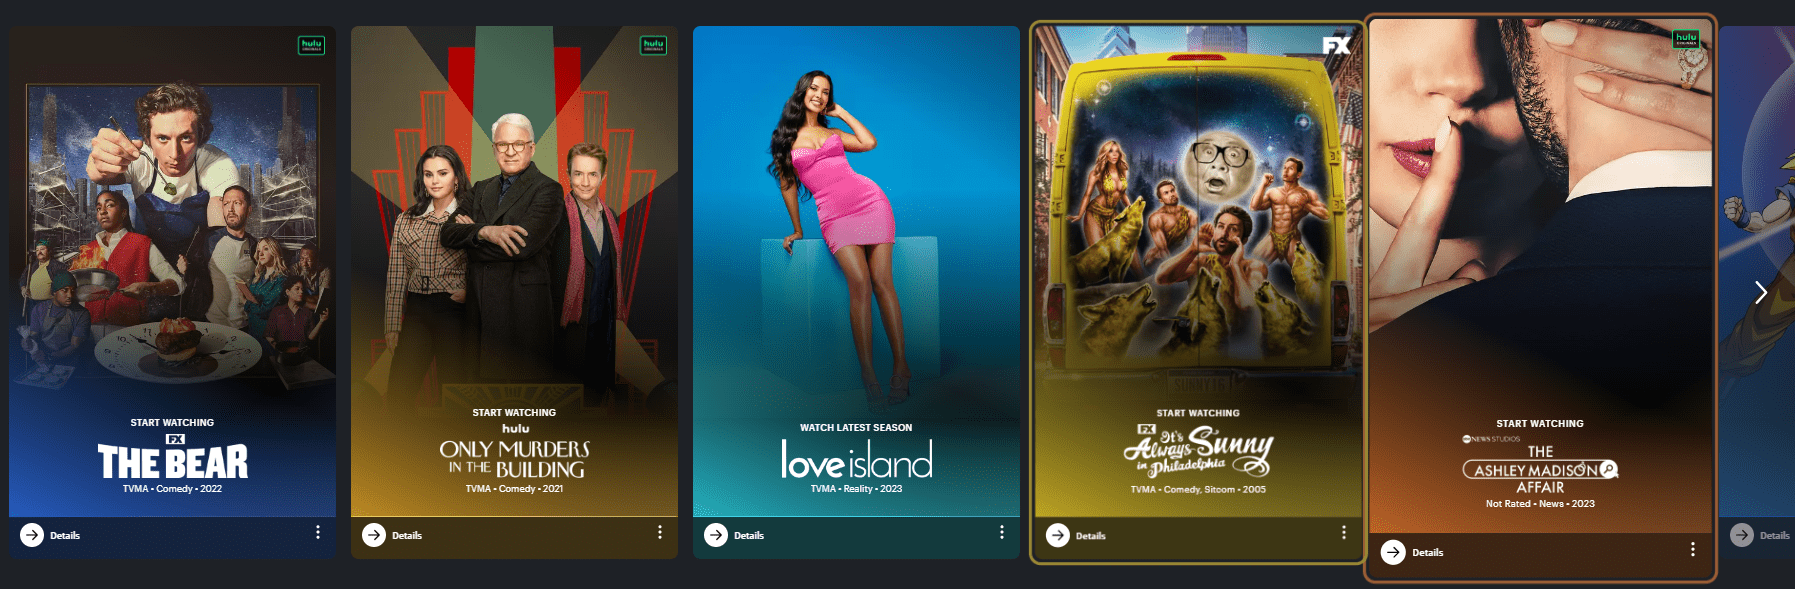 Hulu in India - shows